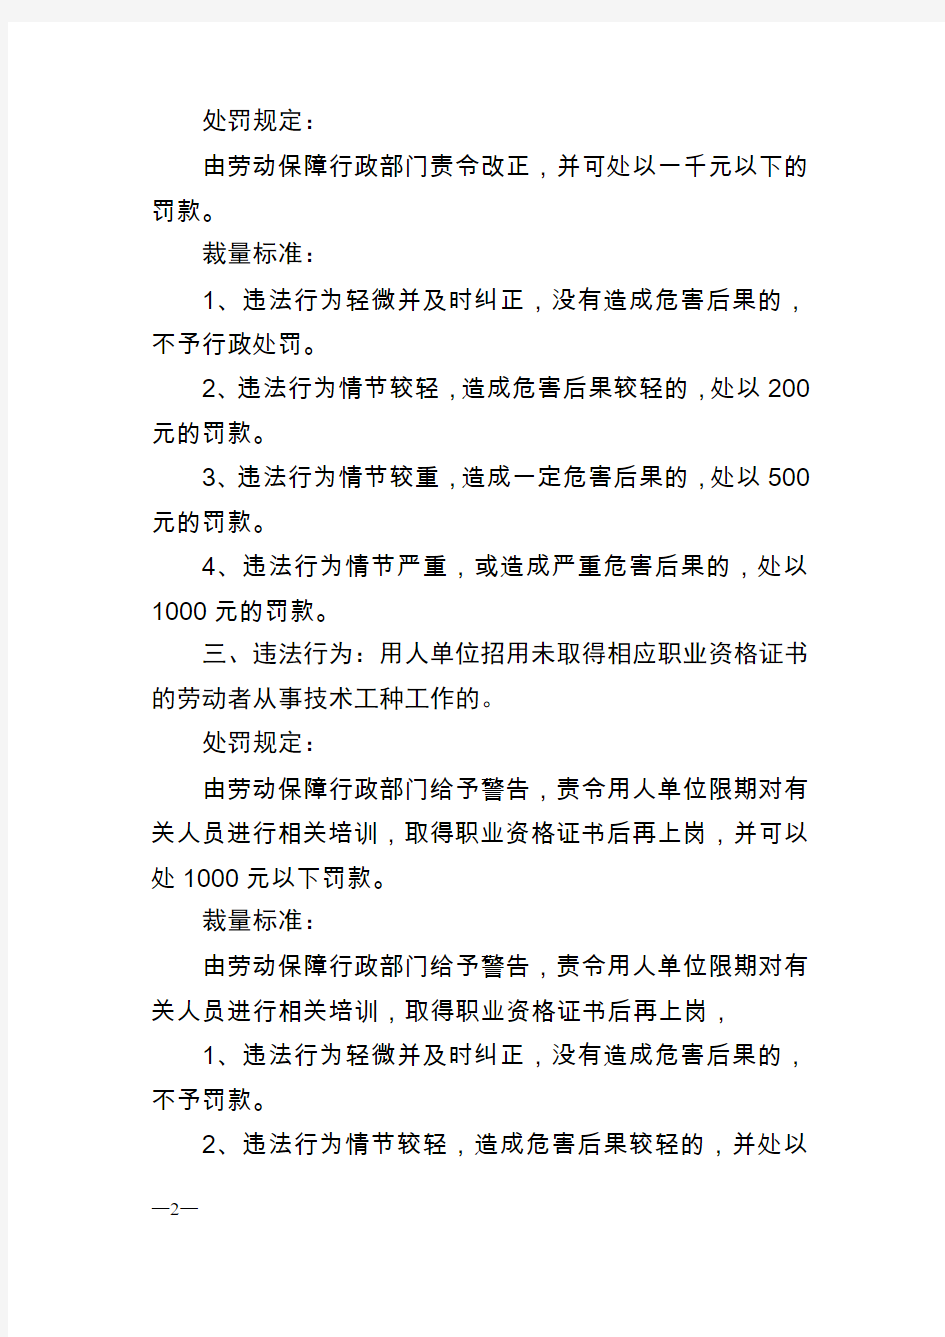 深圳劳动监察行政处罚自由裁量标准